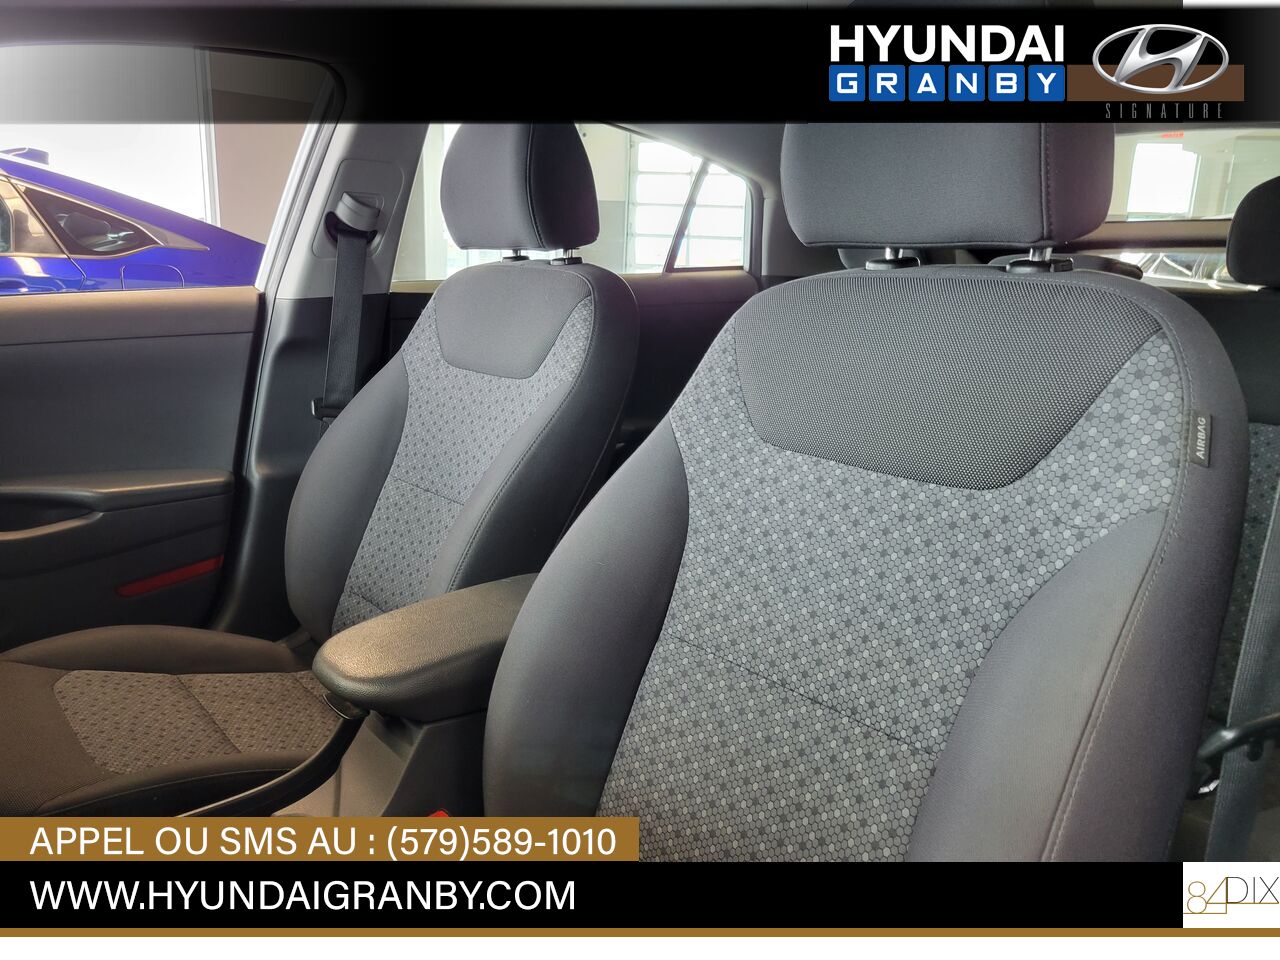 2019 Hyundai Ioniq électrique plus Granby - photo #10